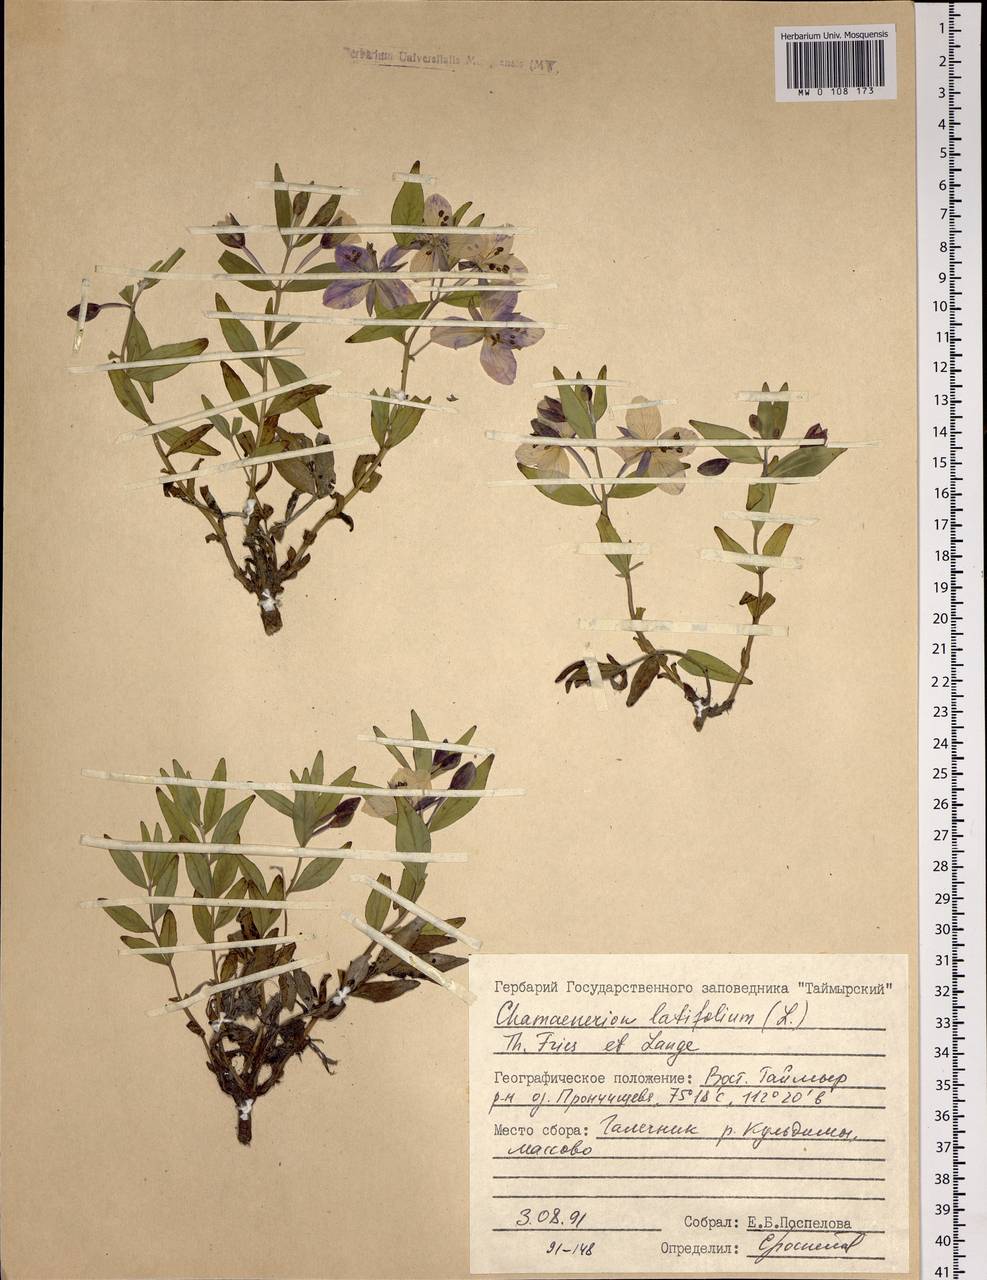 Chamaenerion latifolium (L.) Sweet, Siberia, Central Siberia (S3) (Russia)